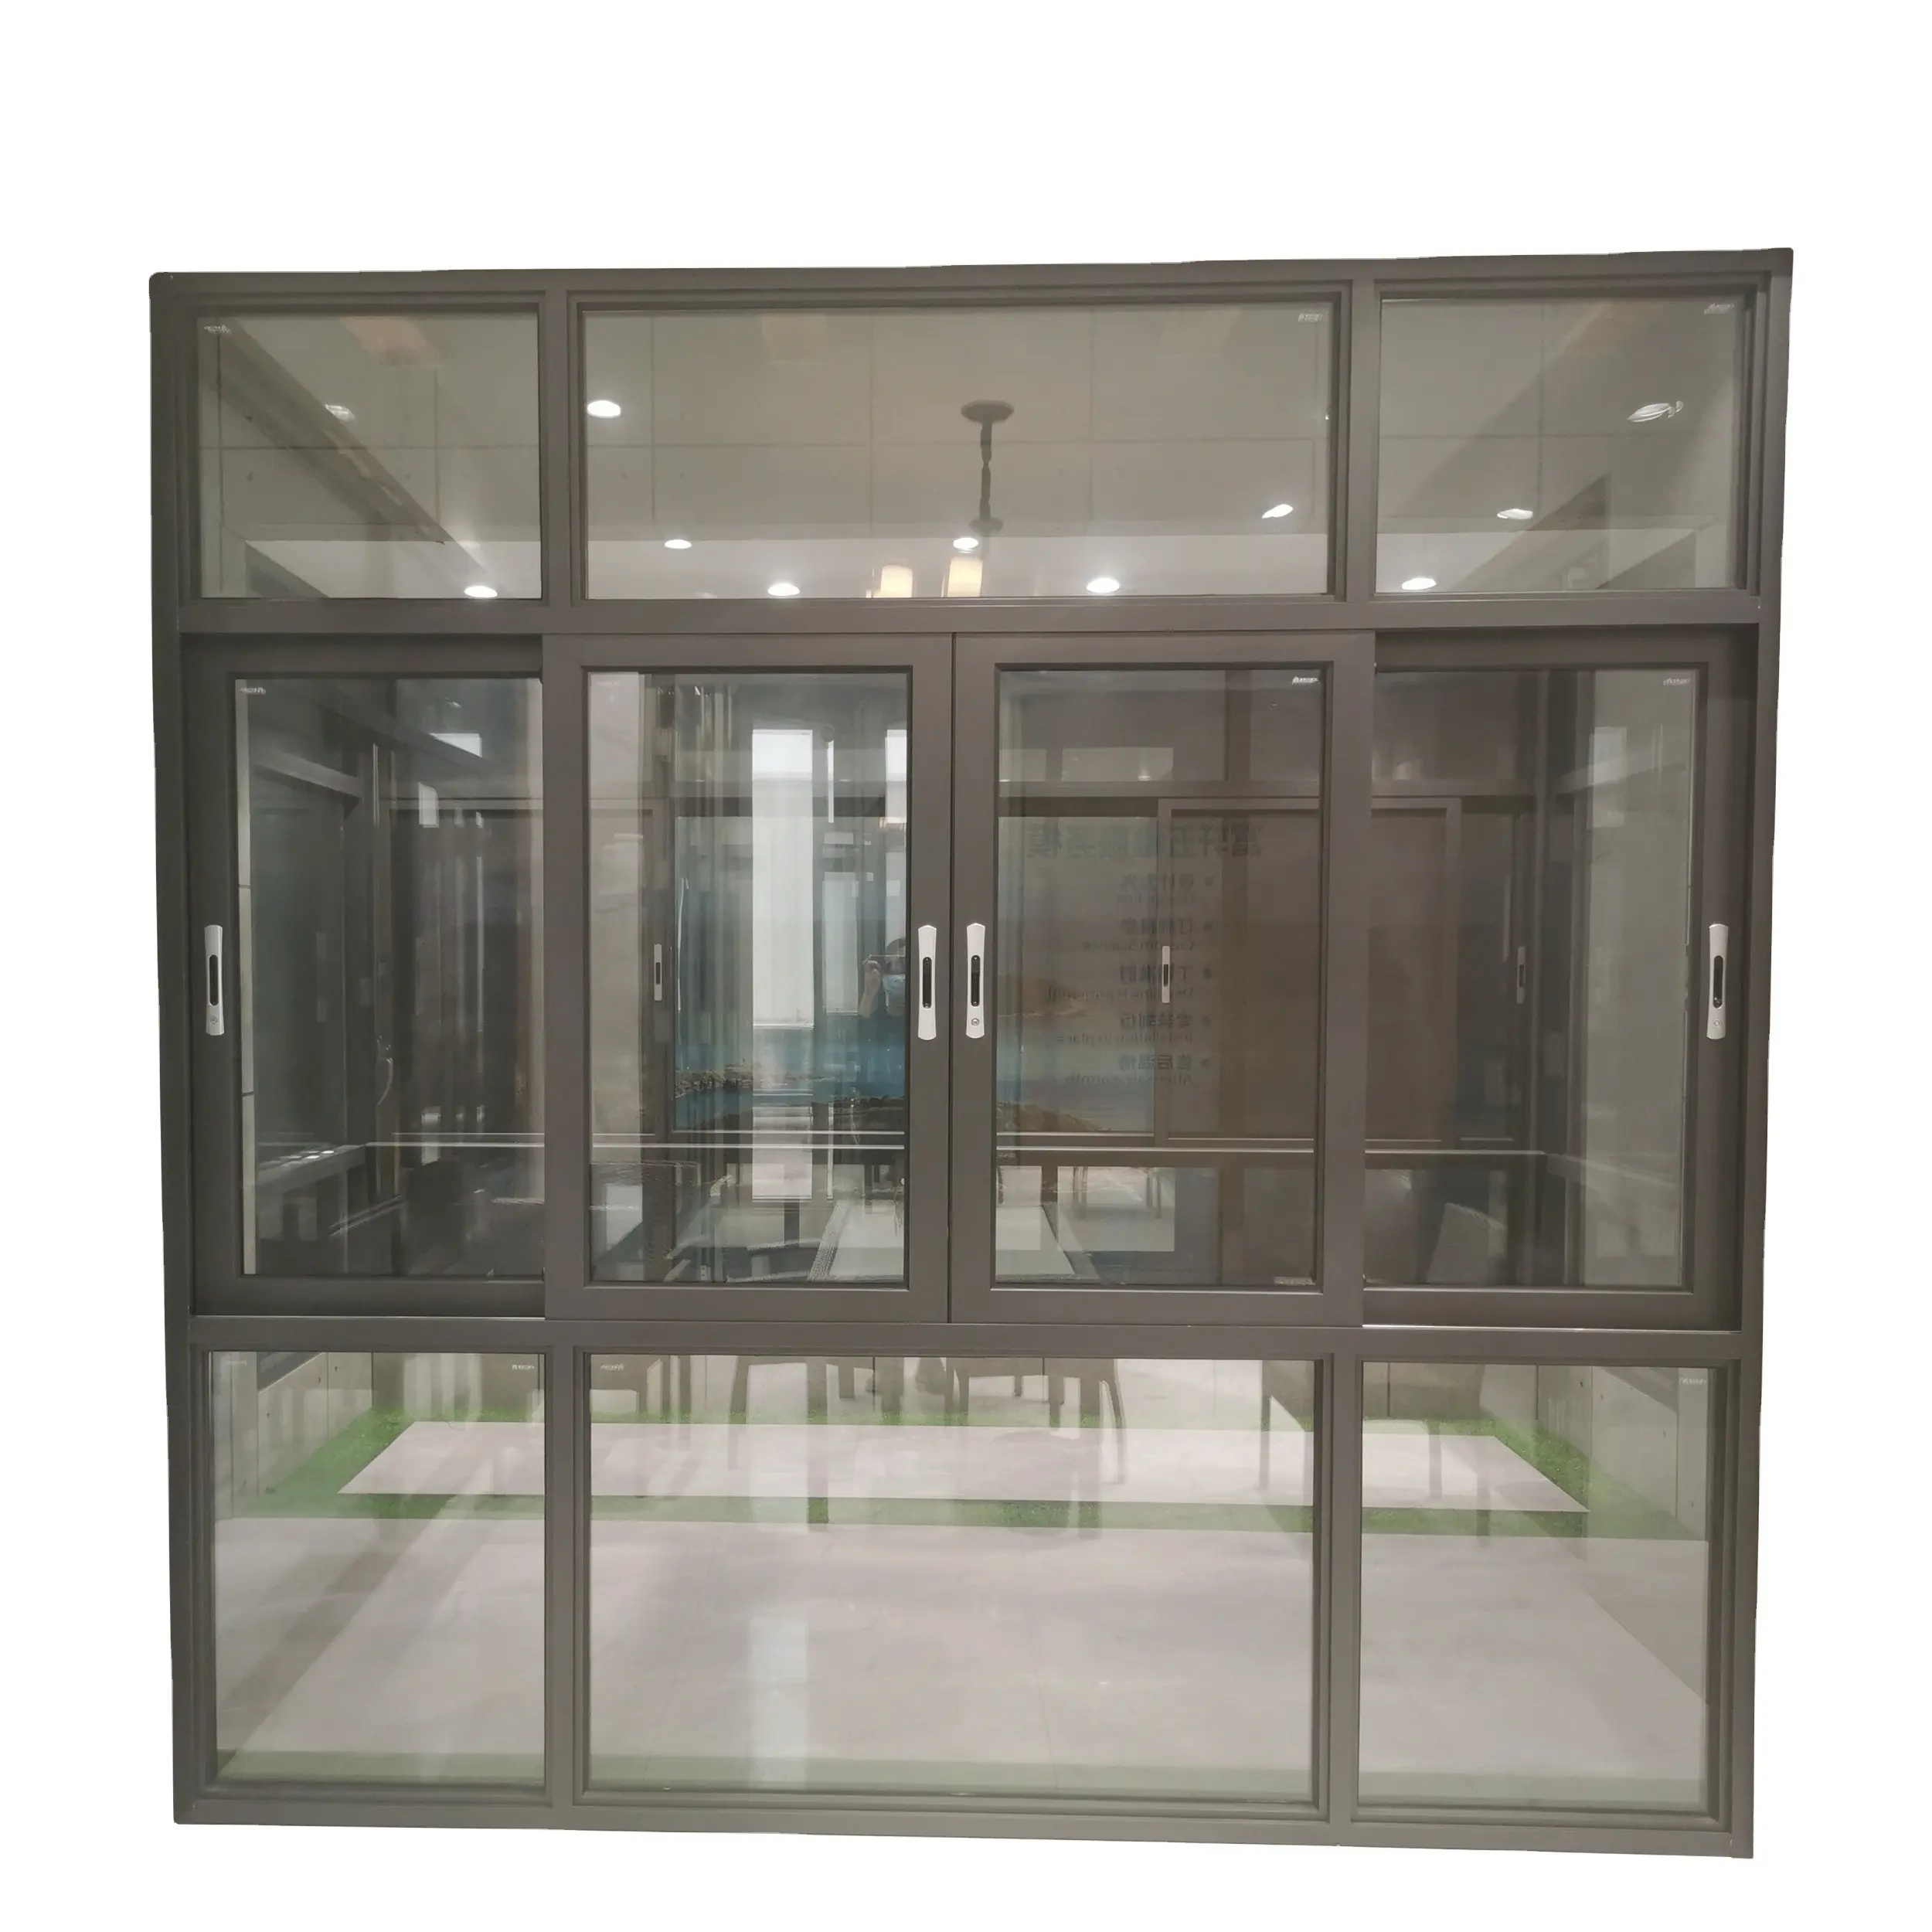 Fuson высокое качество минимализм узкая рамка алюминиевое раздвижное Стекло окно для дома графический дизайн горизонтальная квартира